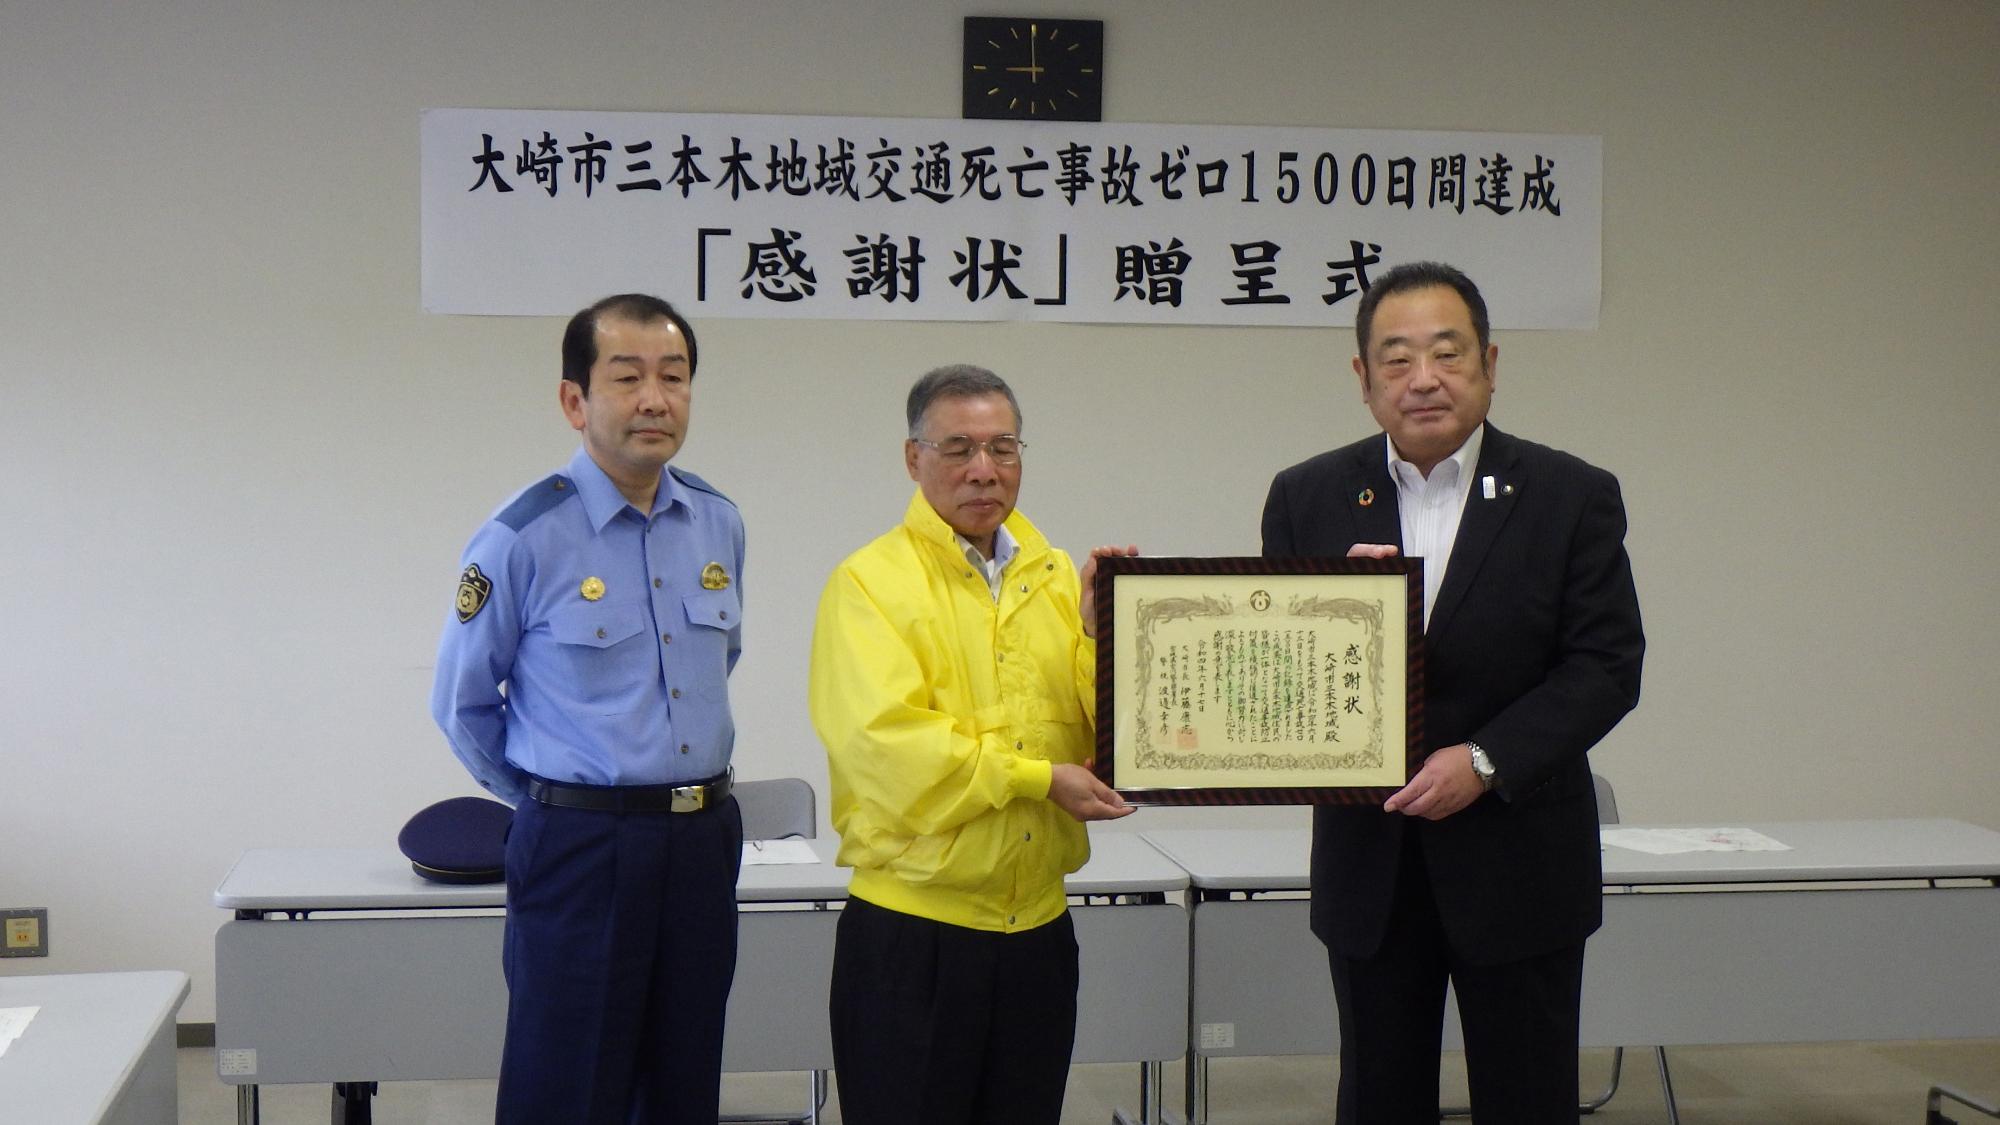 20220617伊藤市長と古川警察署長と三本木支部長と表彰状を持っての記念撮影